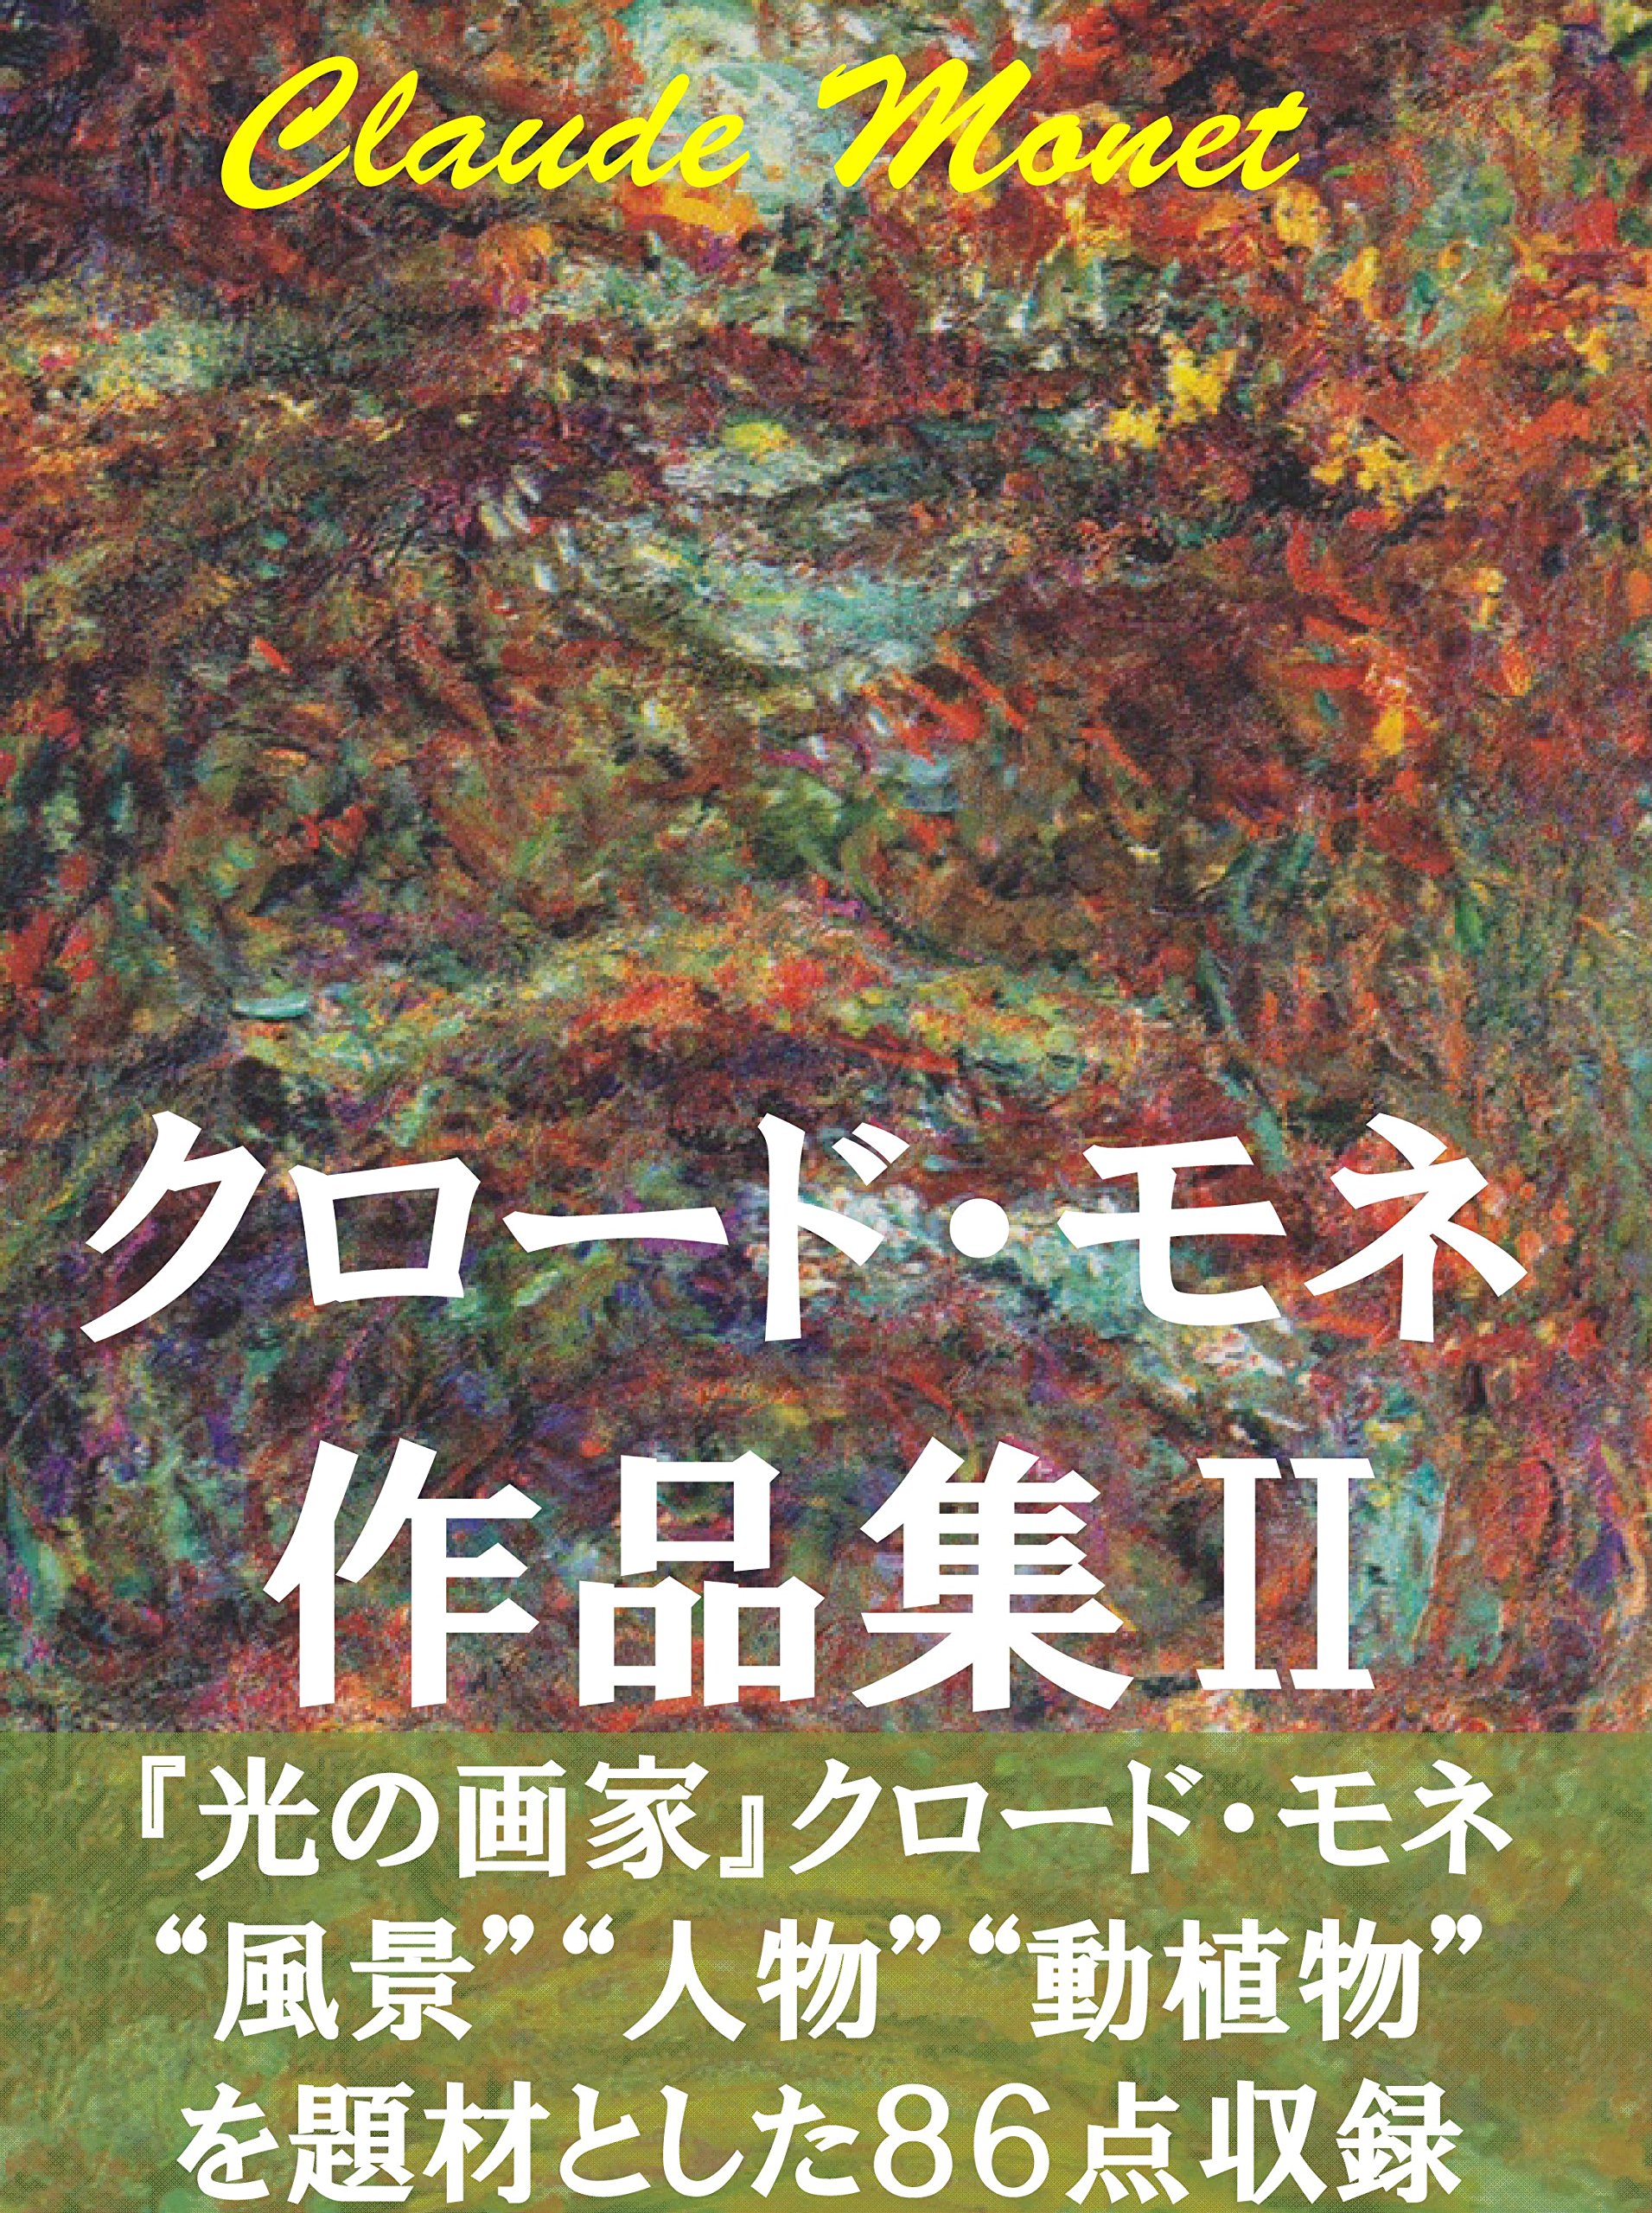 Claude Monet sakuhinsyu 2: Huukei jinbutu dousyokubutu nado (Japanese Edition)